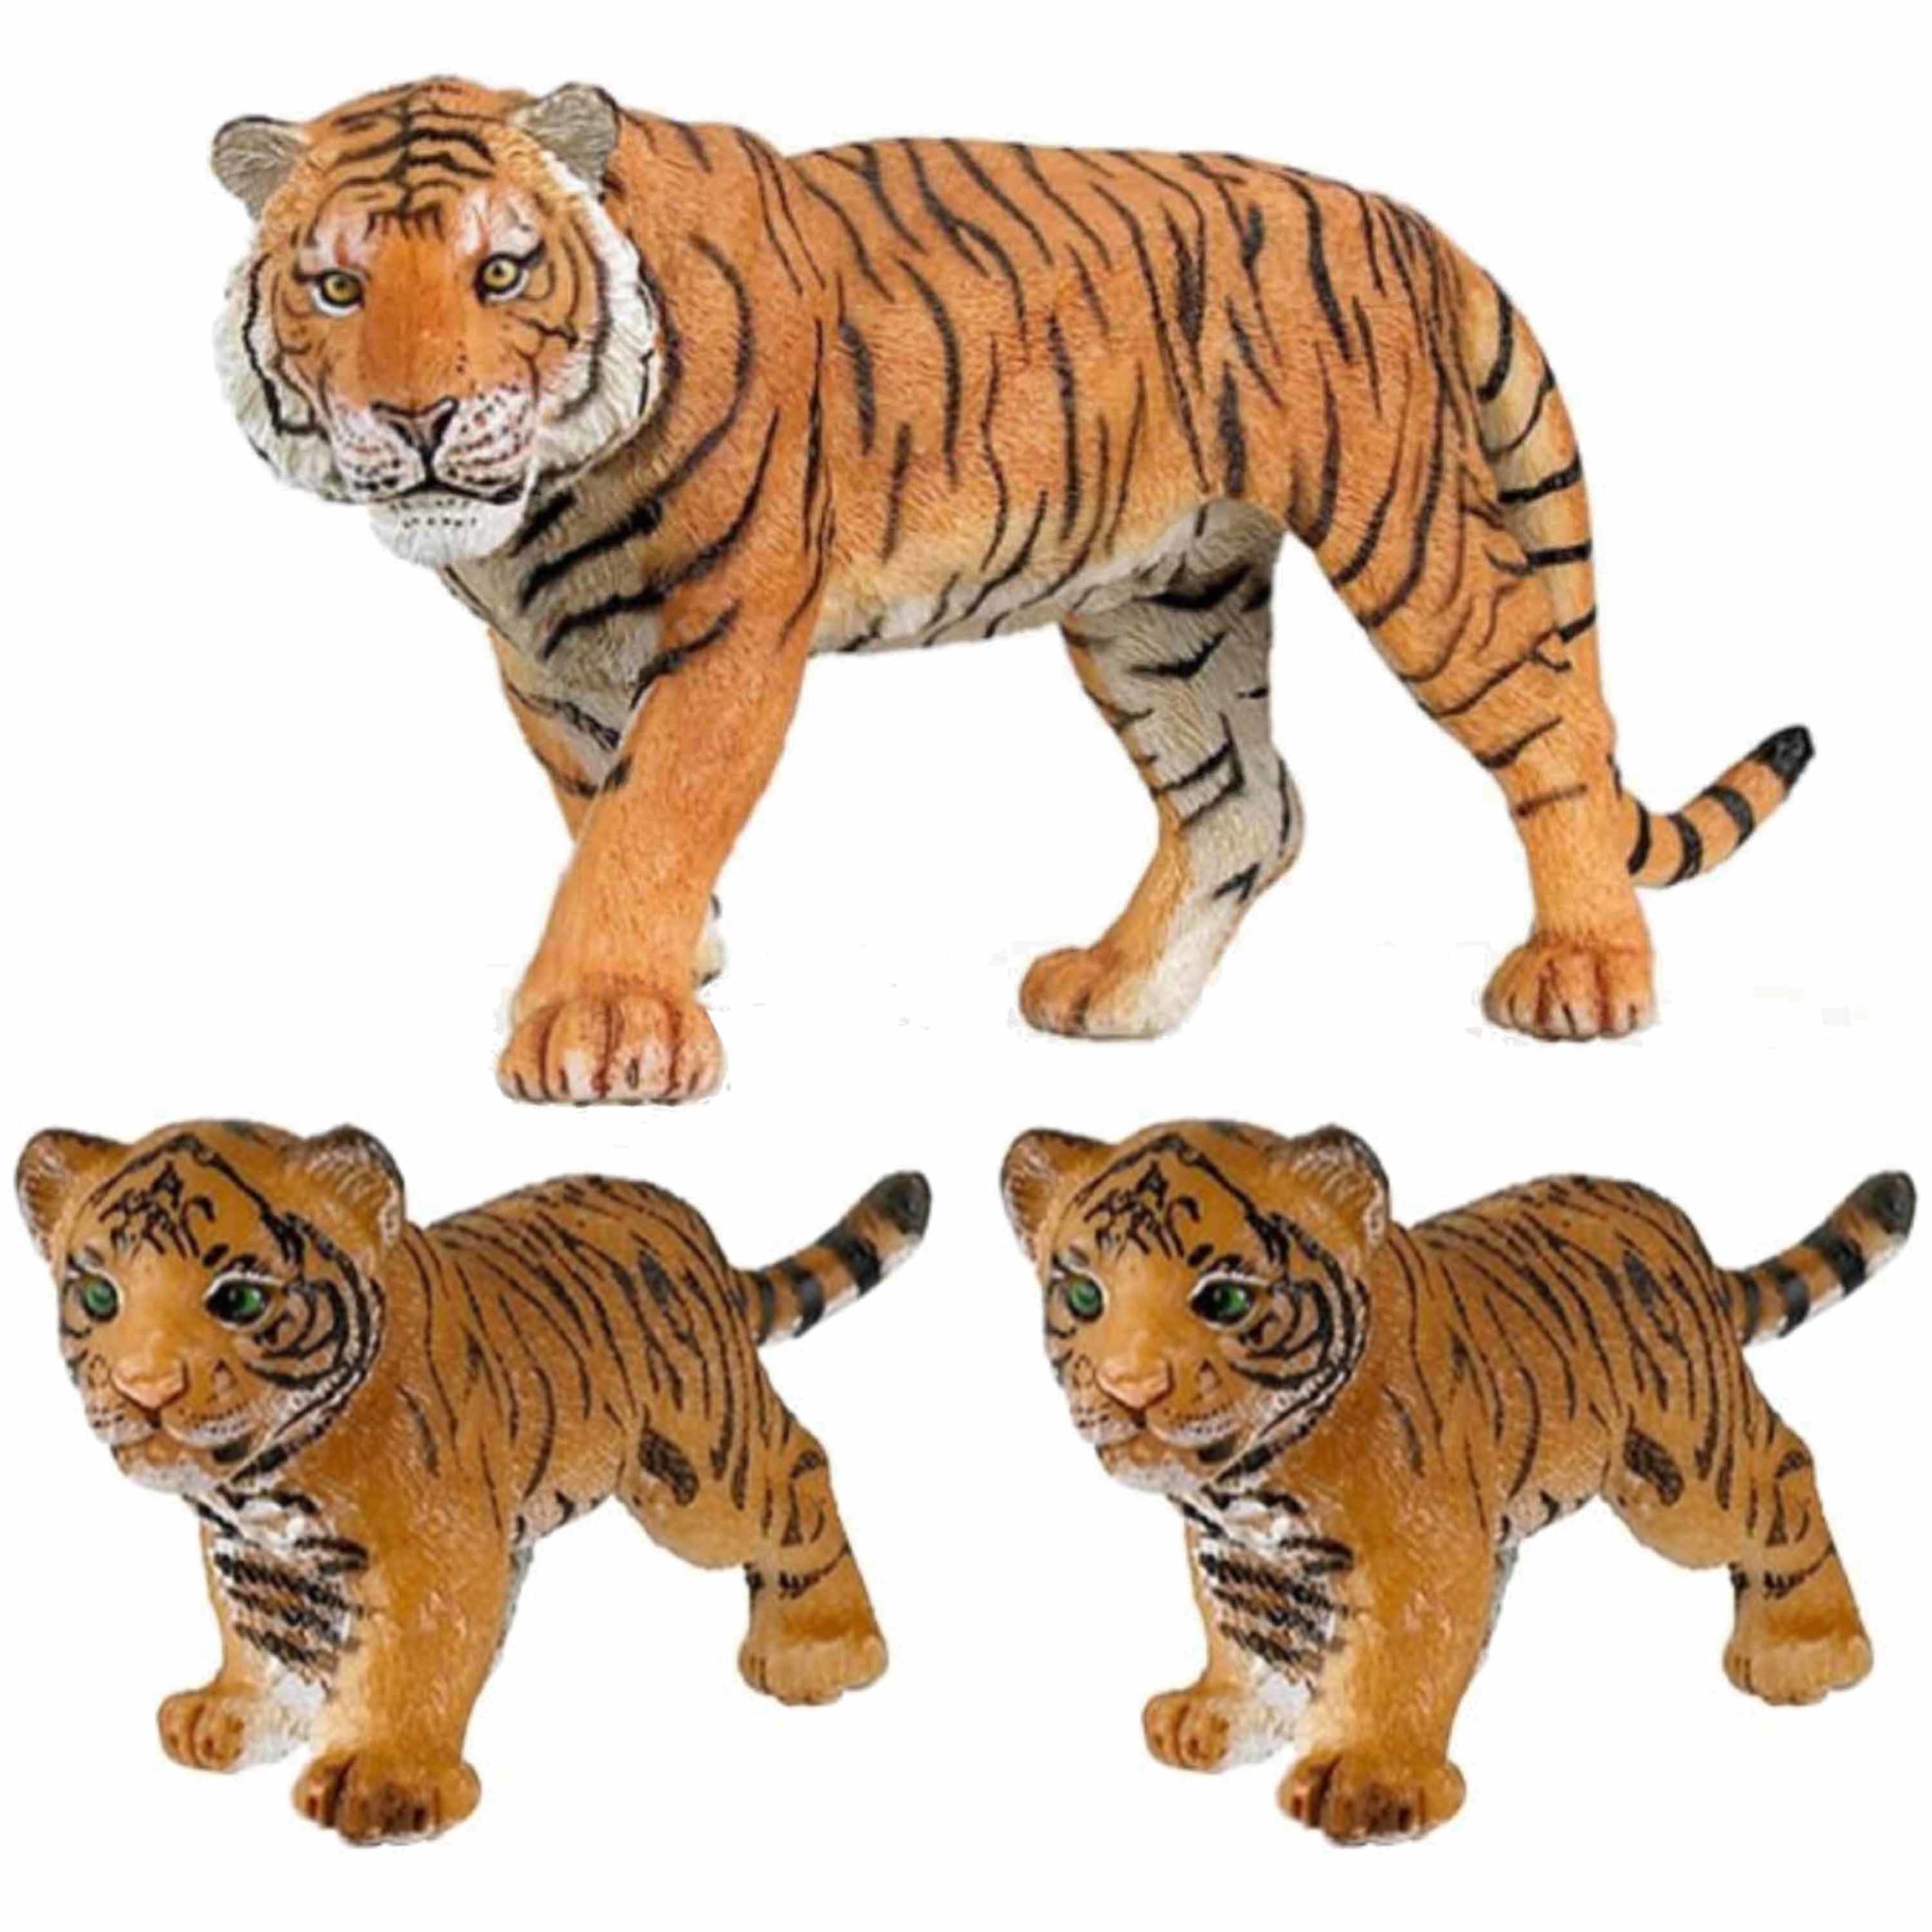 Plastic speelgoed dieren figuren setje tijgers familie van moeder en 2x kinderen